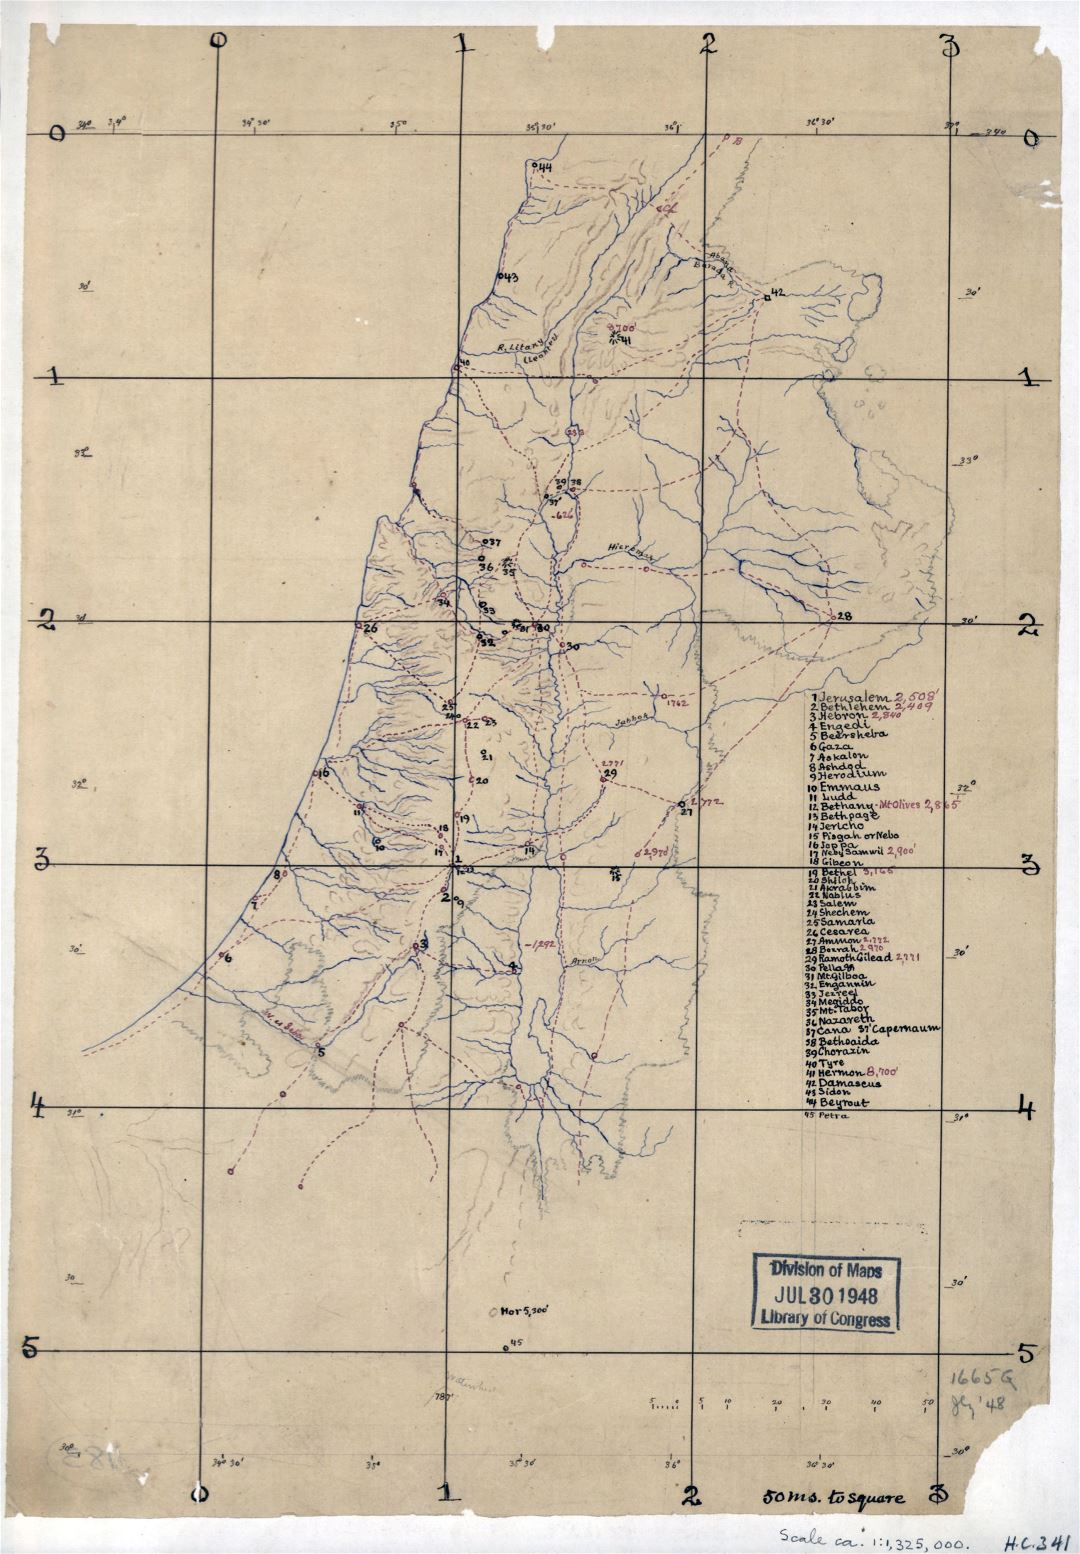 Grande detallado antiguo mapa de Palestina - 188x